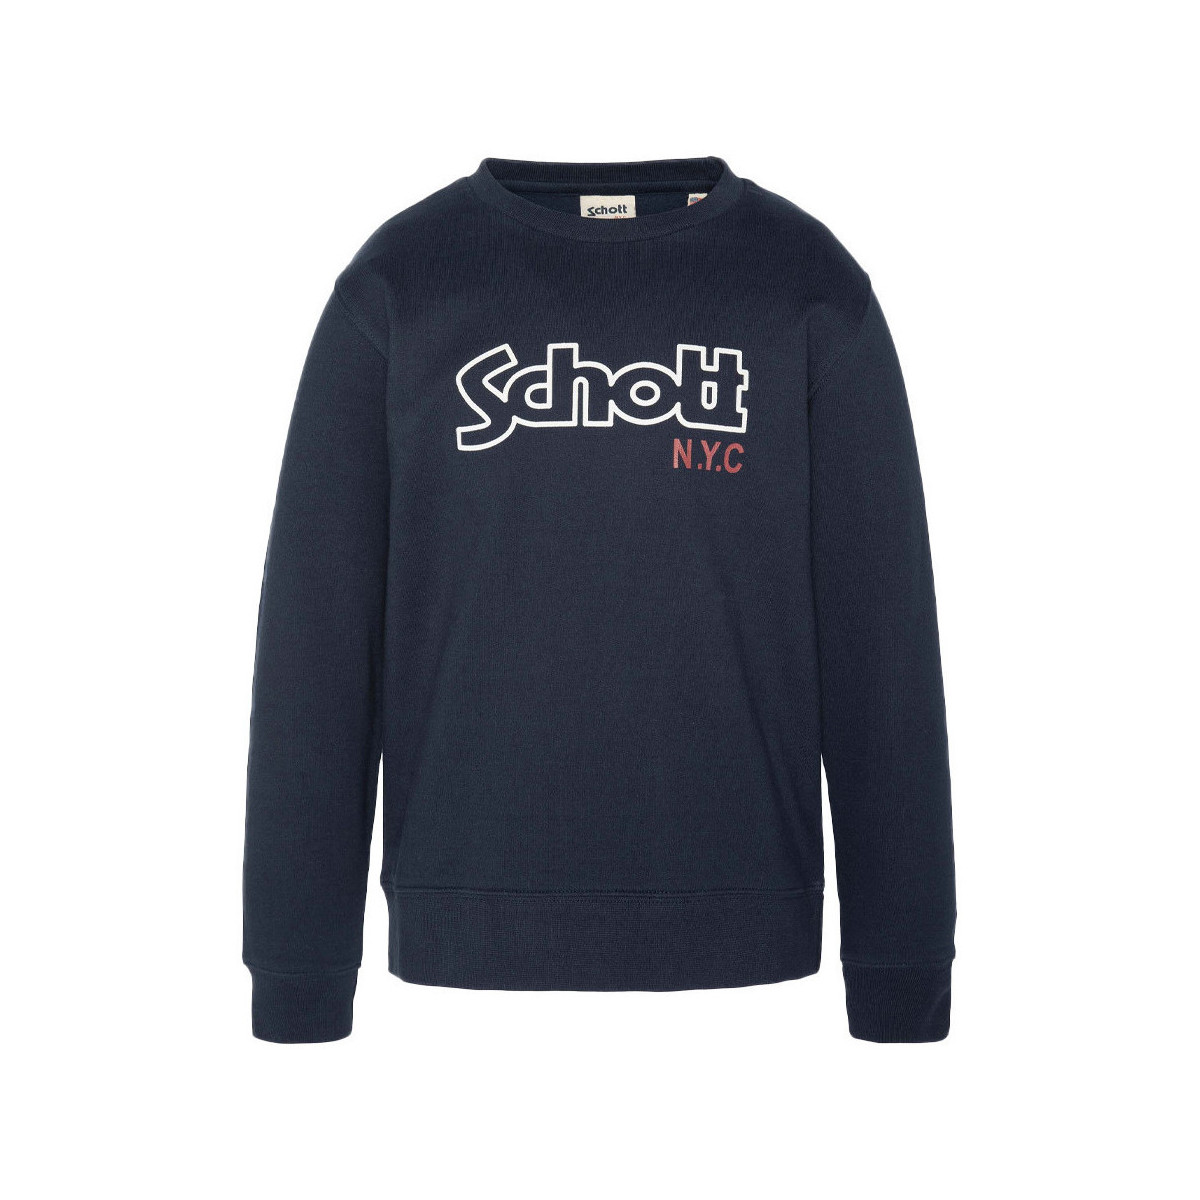 Textiel Jongens Sweaters / Sweatshirts Schott  Blauw